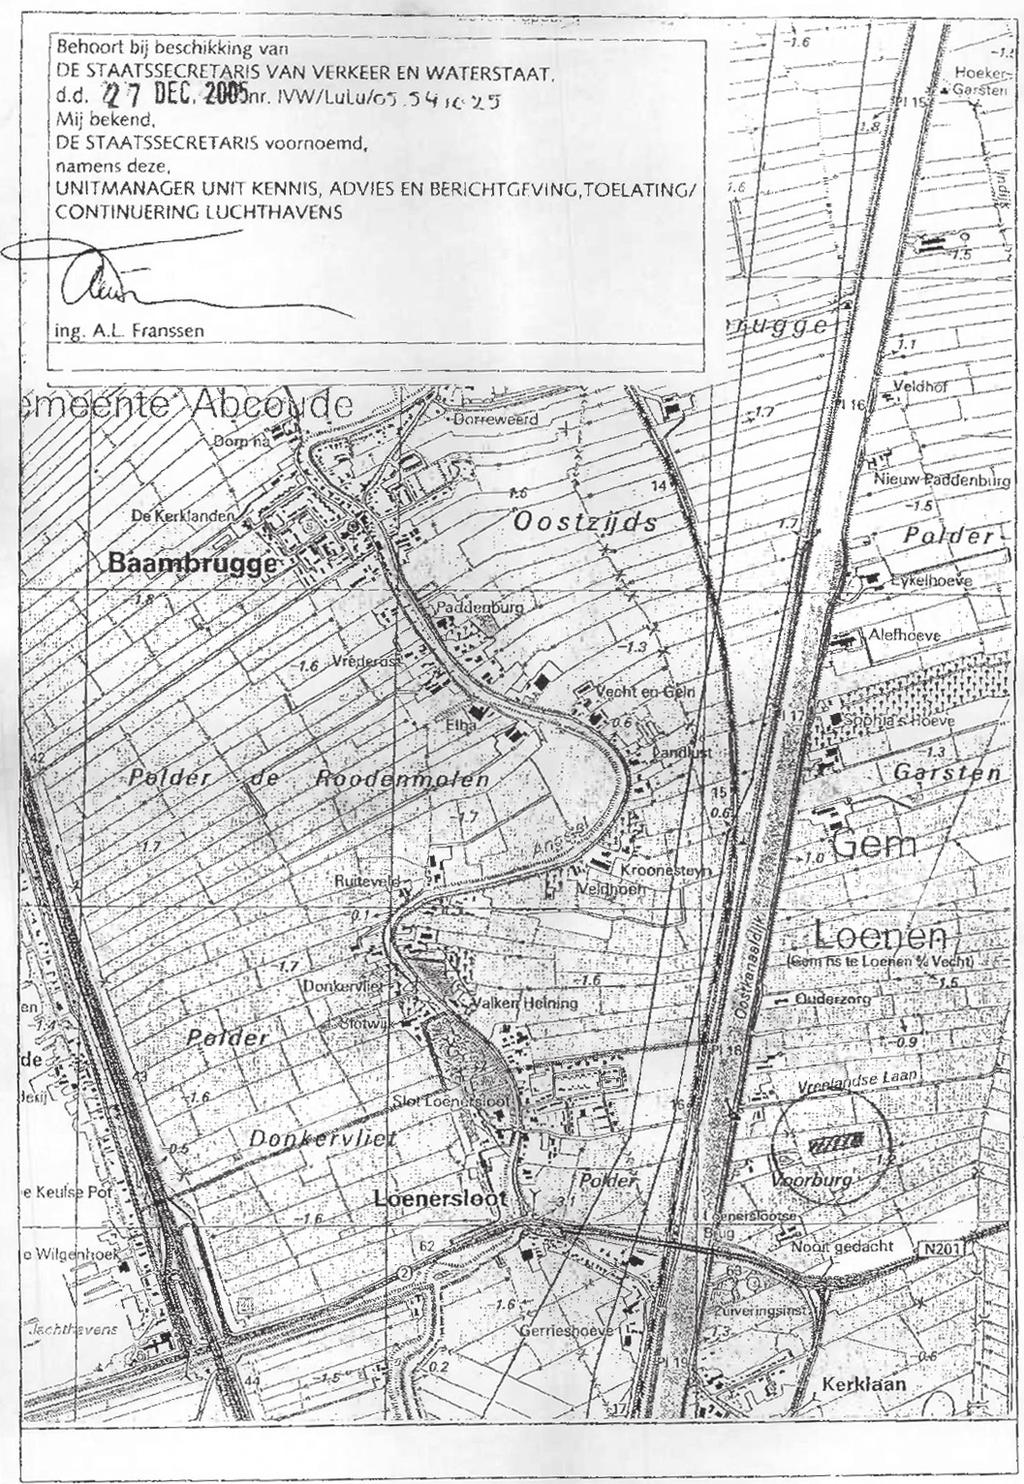 BIJLAGE 1: Kaart met luchthavengebied